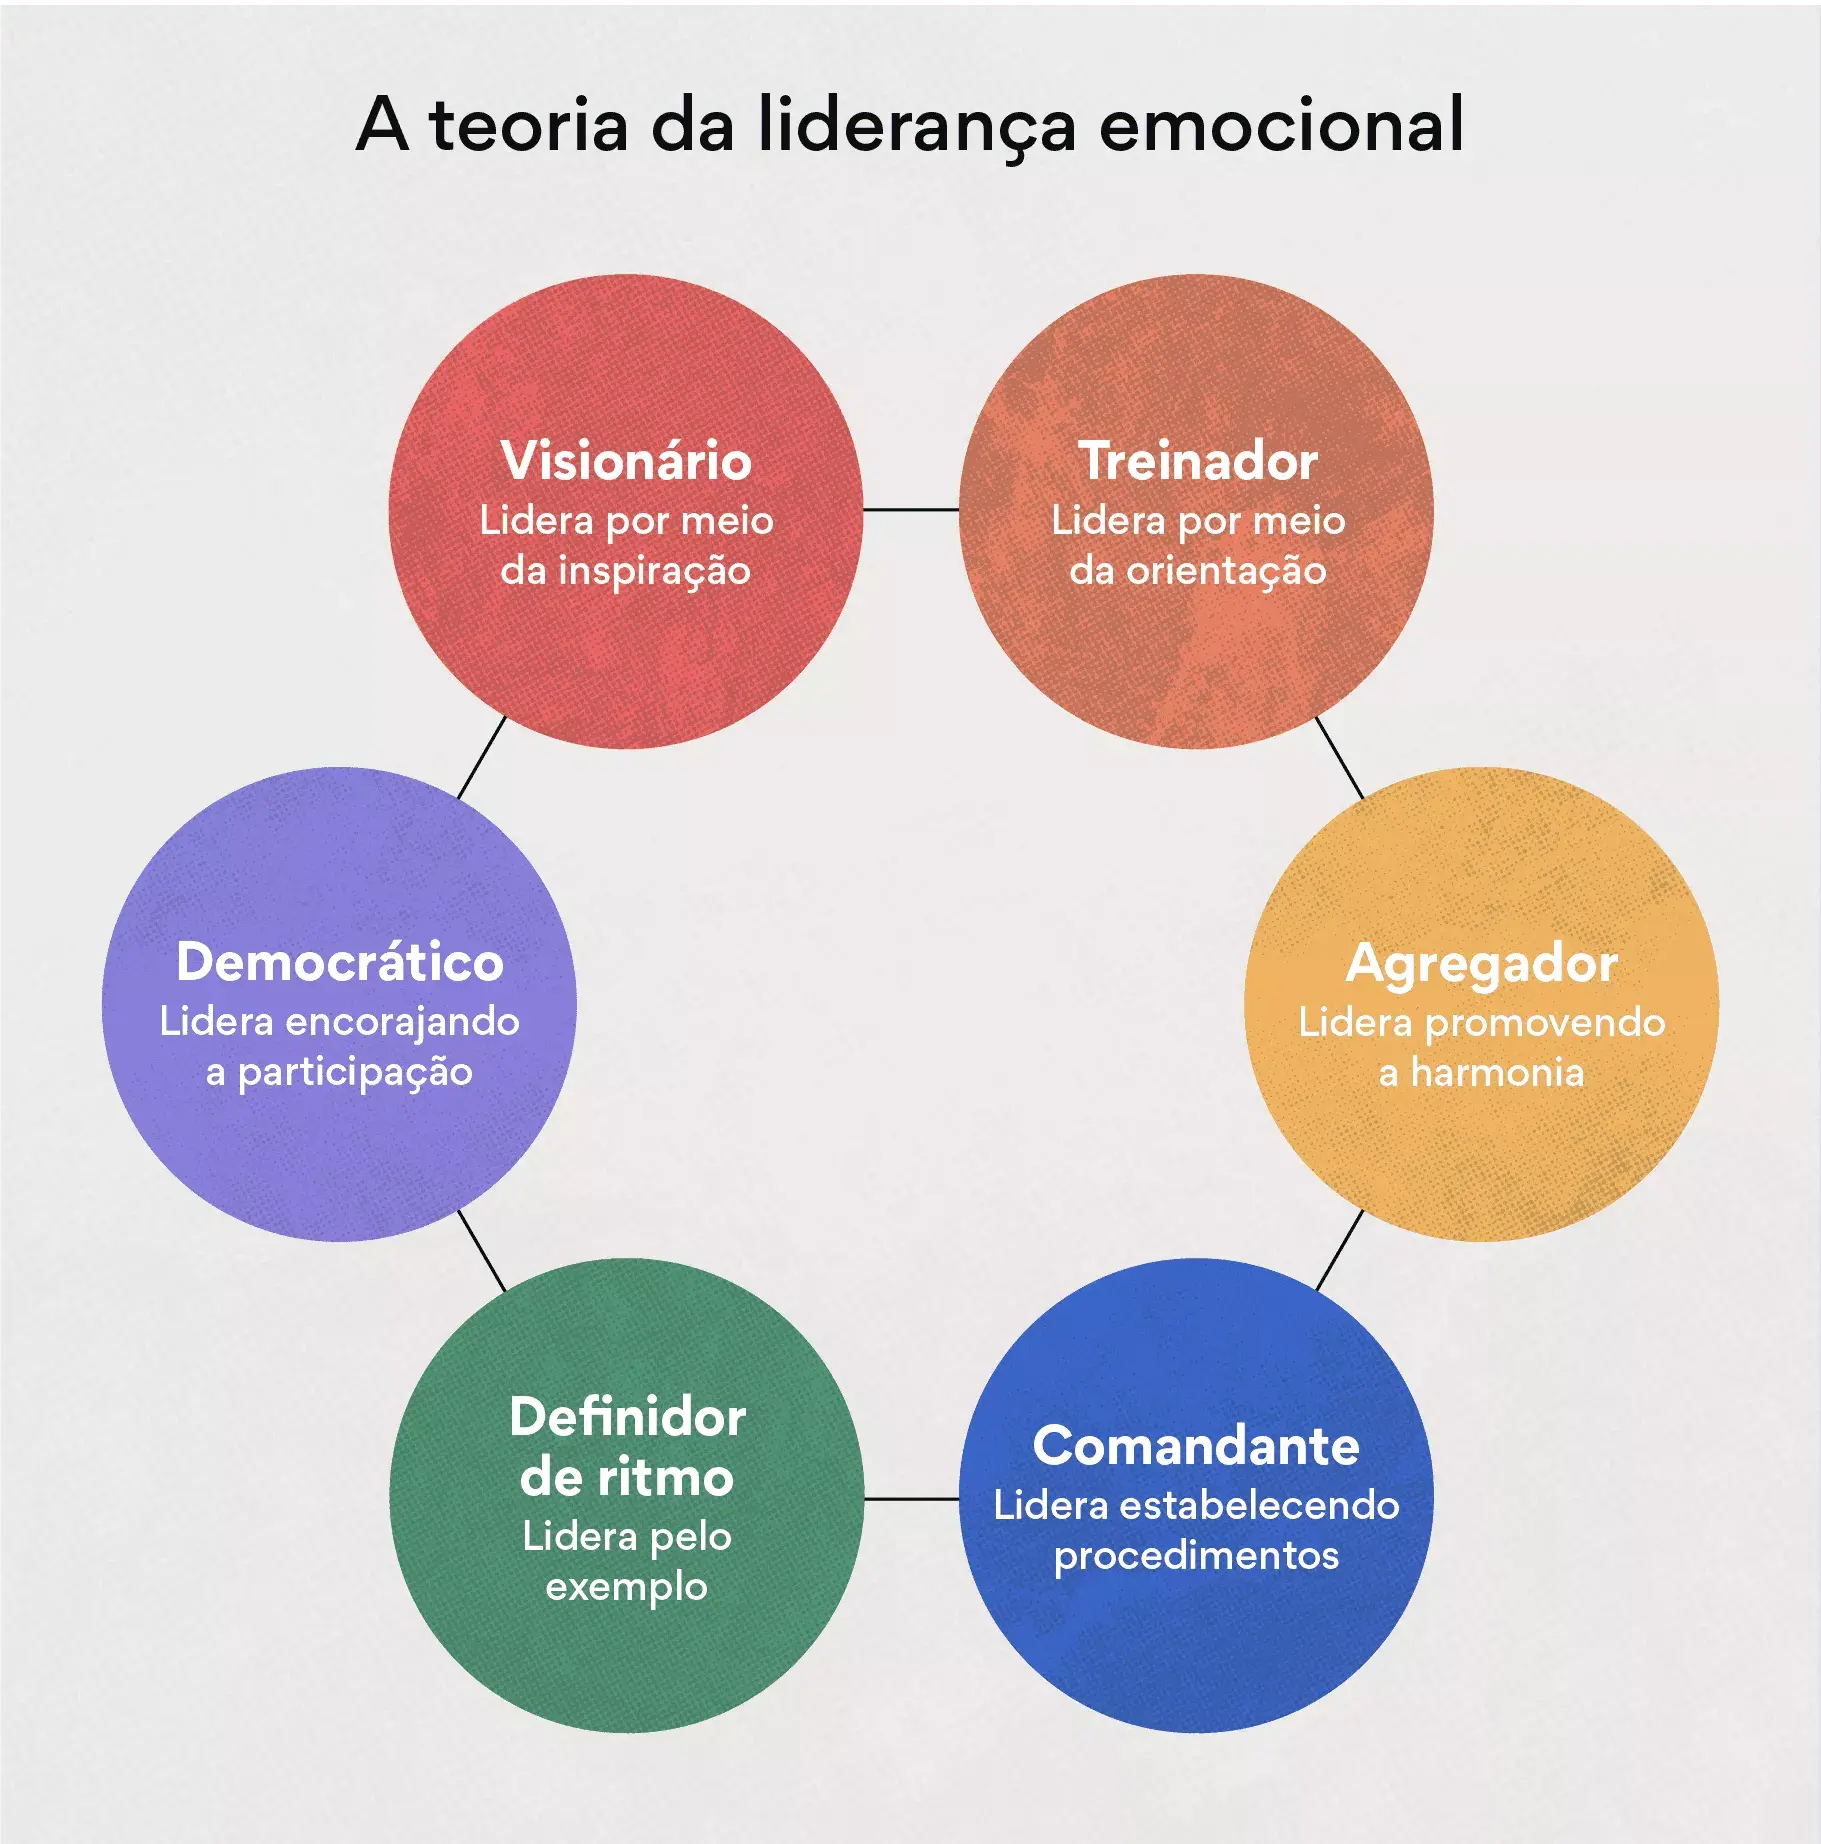 A teoria da liderança emocional